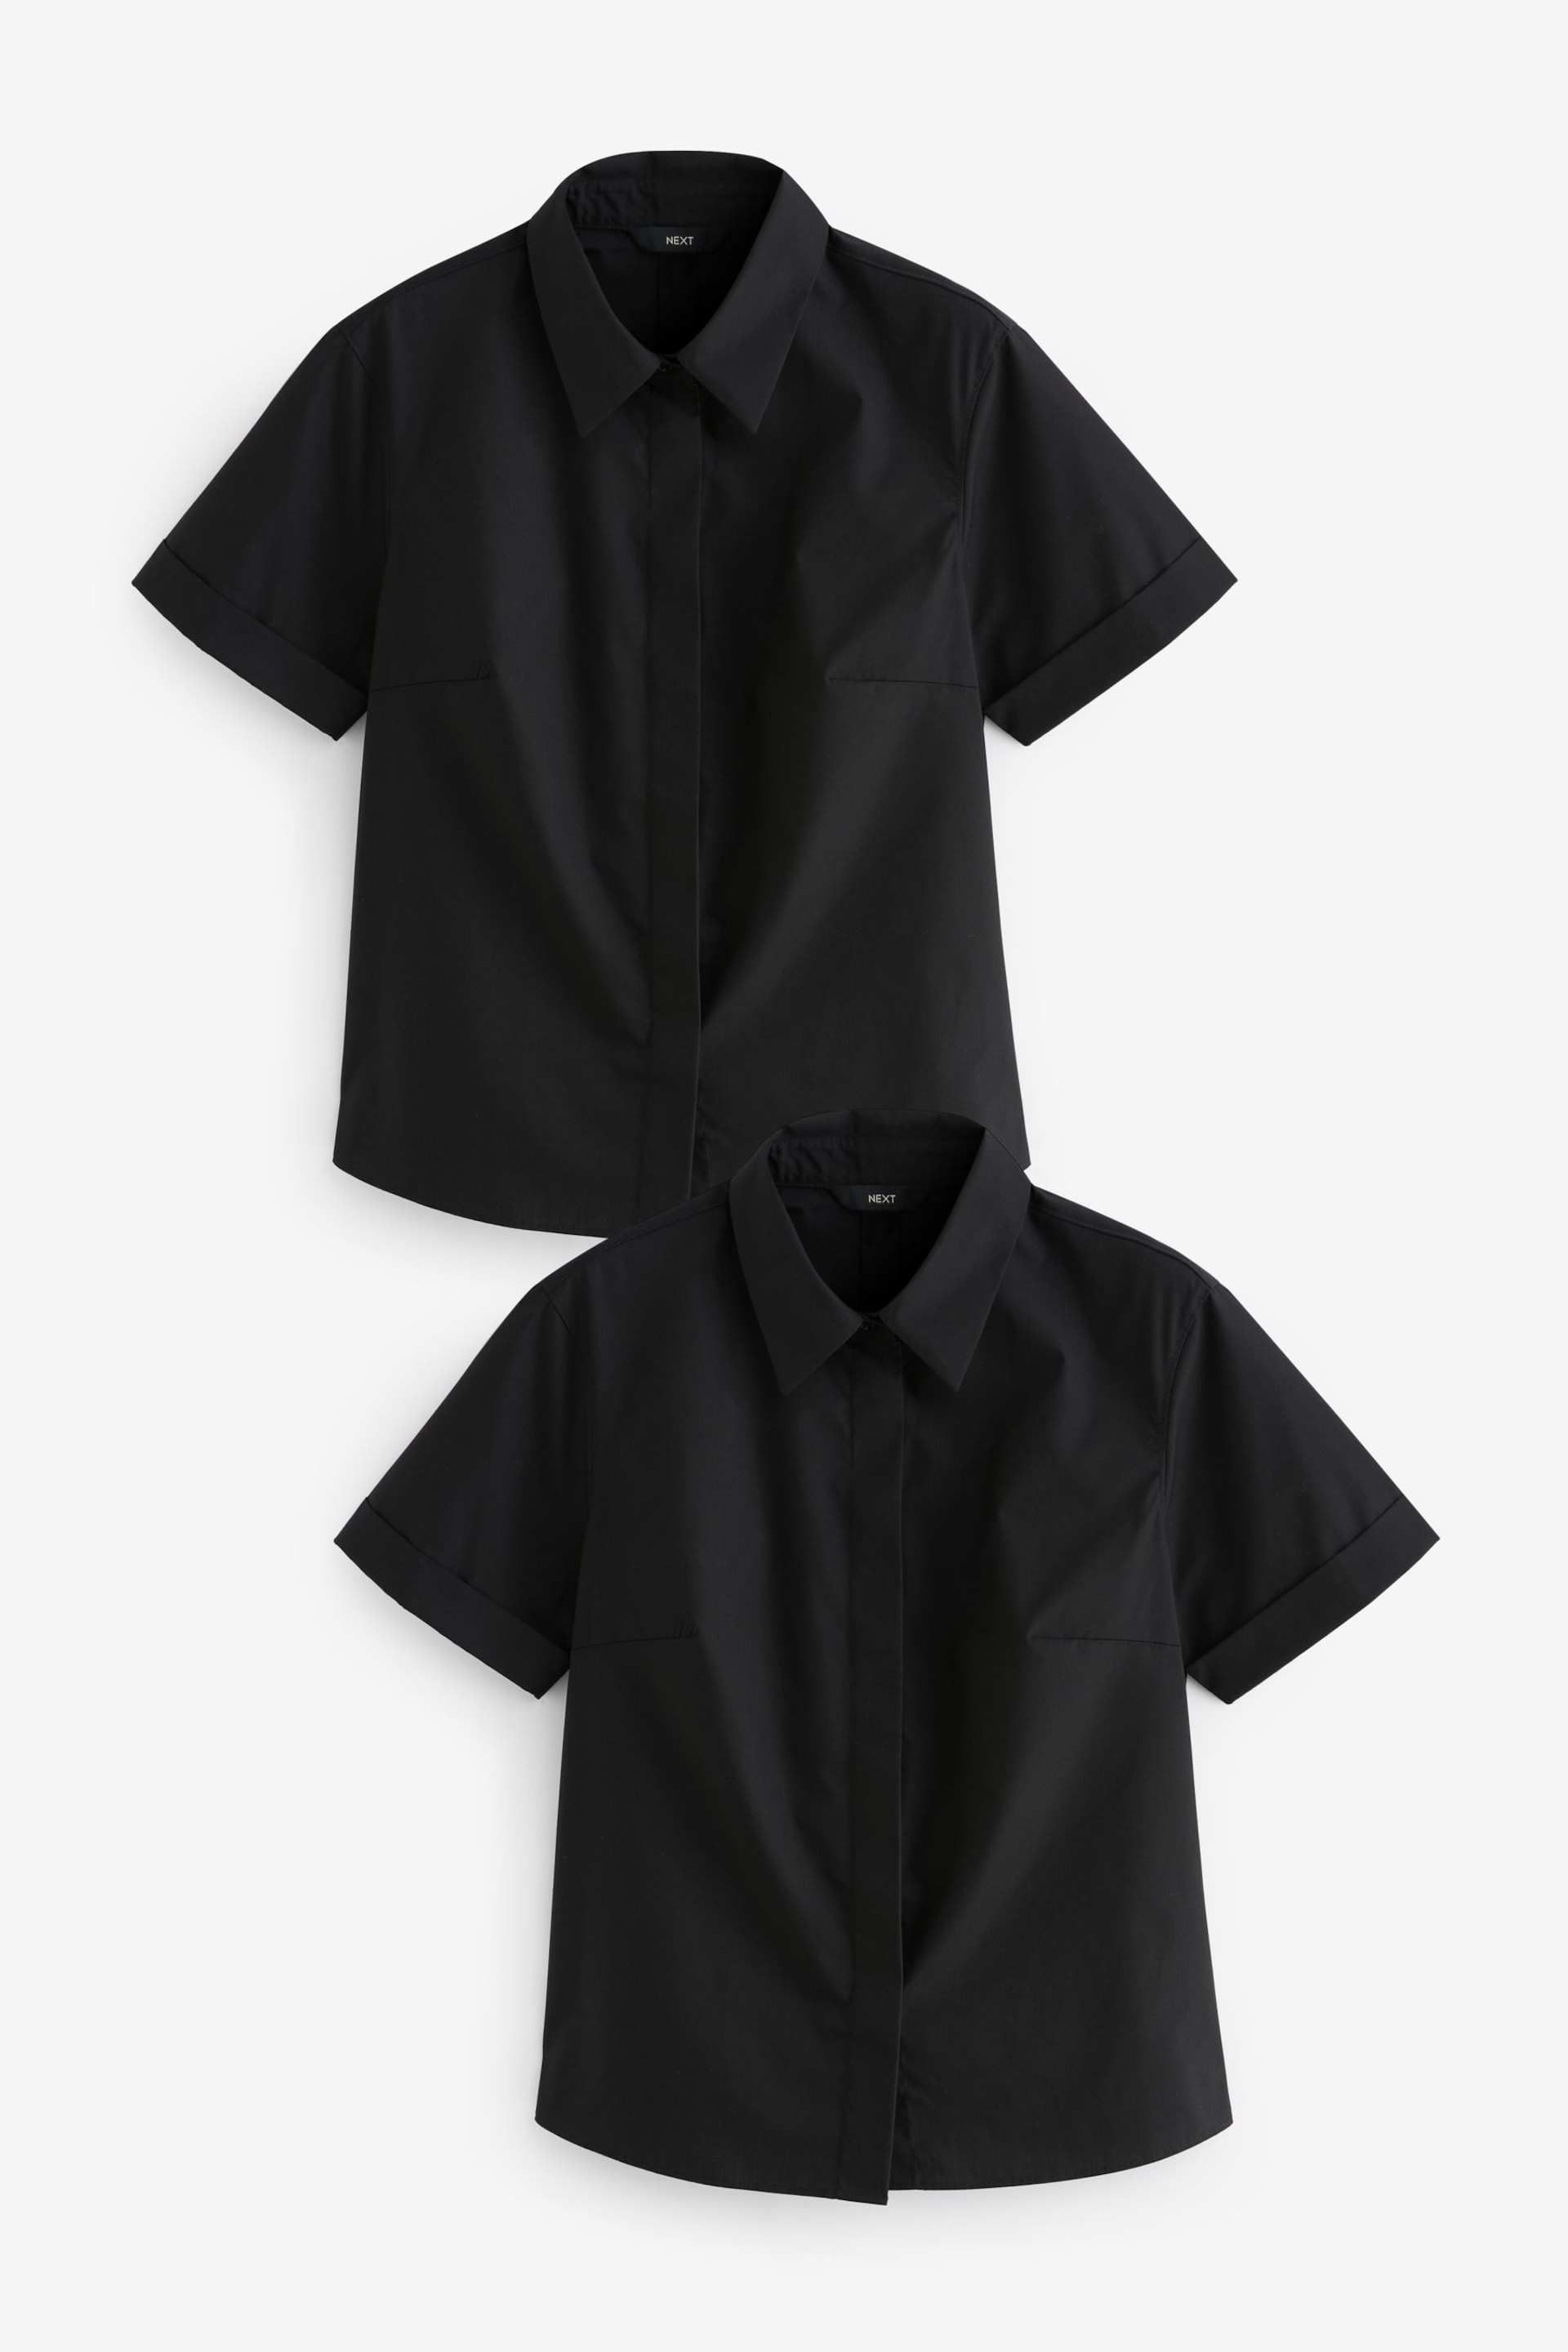 Black Short Sleeve Shirts 2 Pack - Image 5 of 6